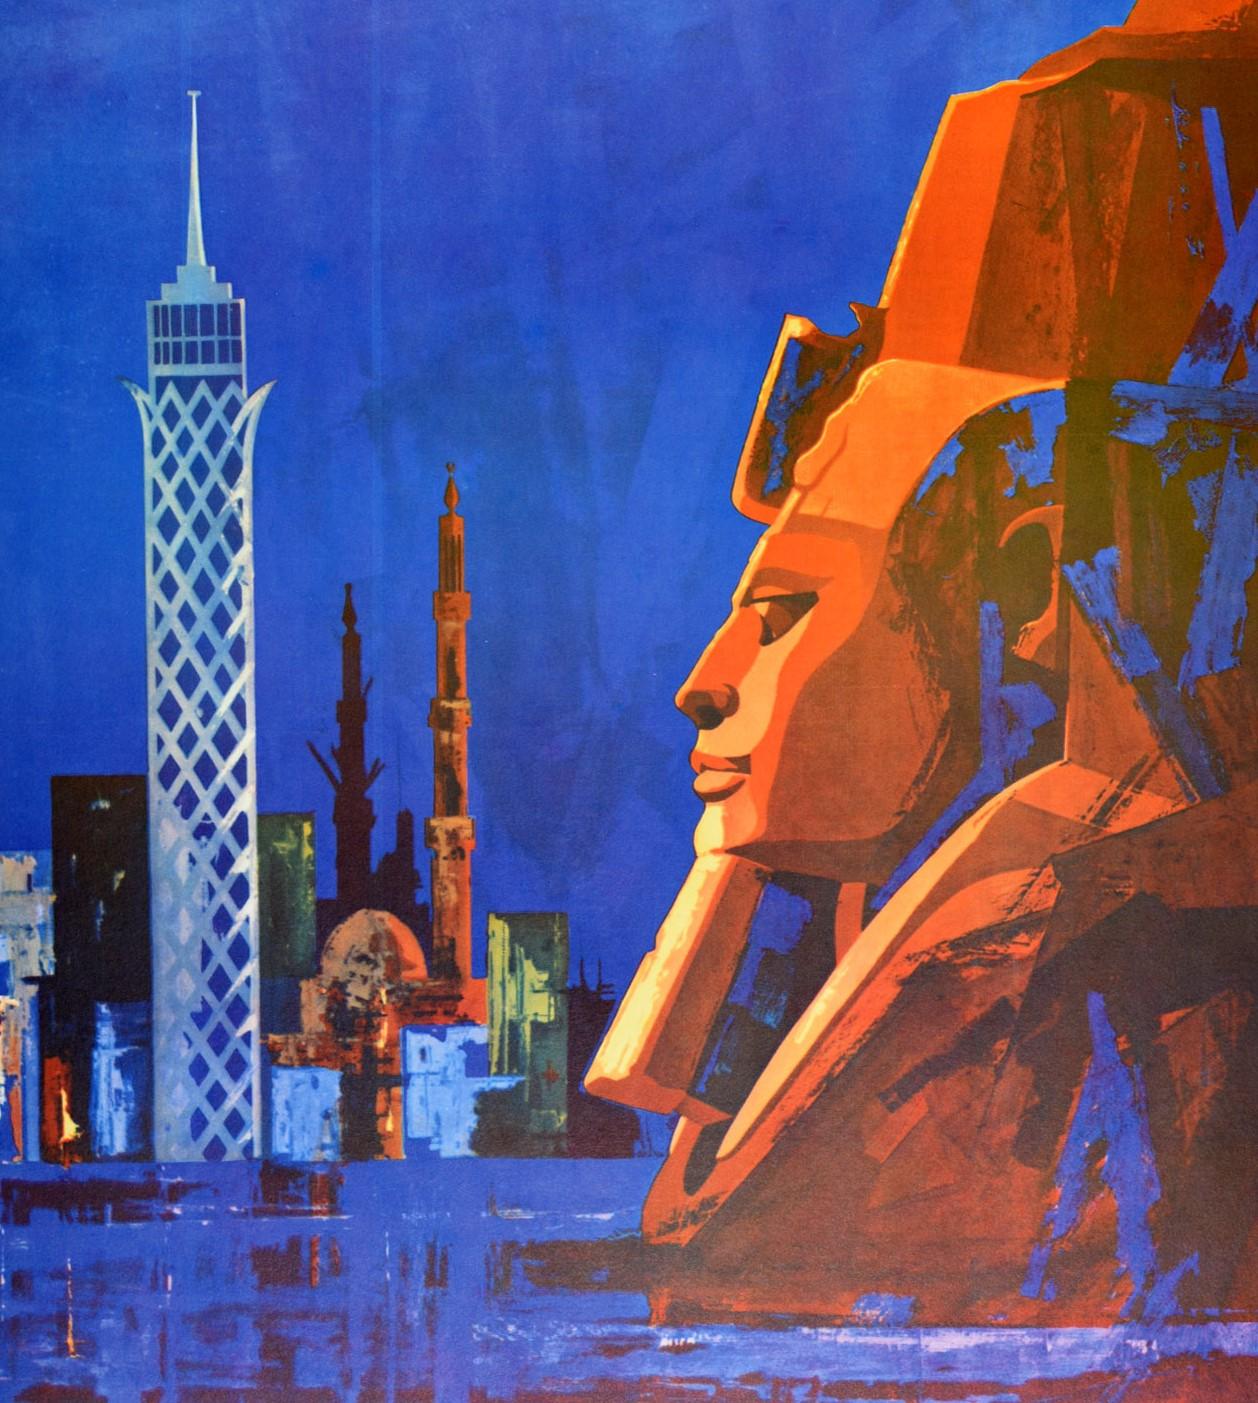 Affiche de voyage originale pour l'Egypte UAR (United Arab Republic ; 1958-1971) représentant des bâtiments traditionnels et modernes sur un fond bleu foncé avec une tête de Sphinx au premier plan. Excellent état.